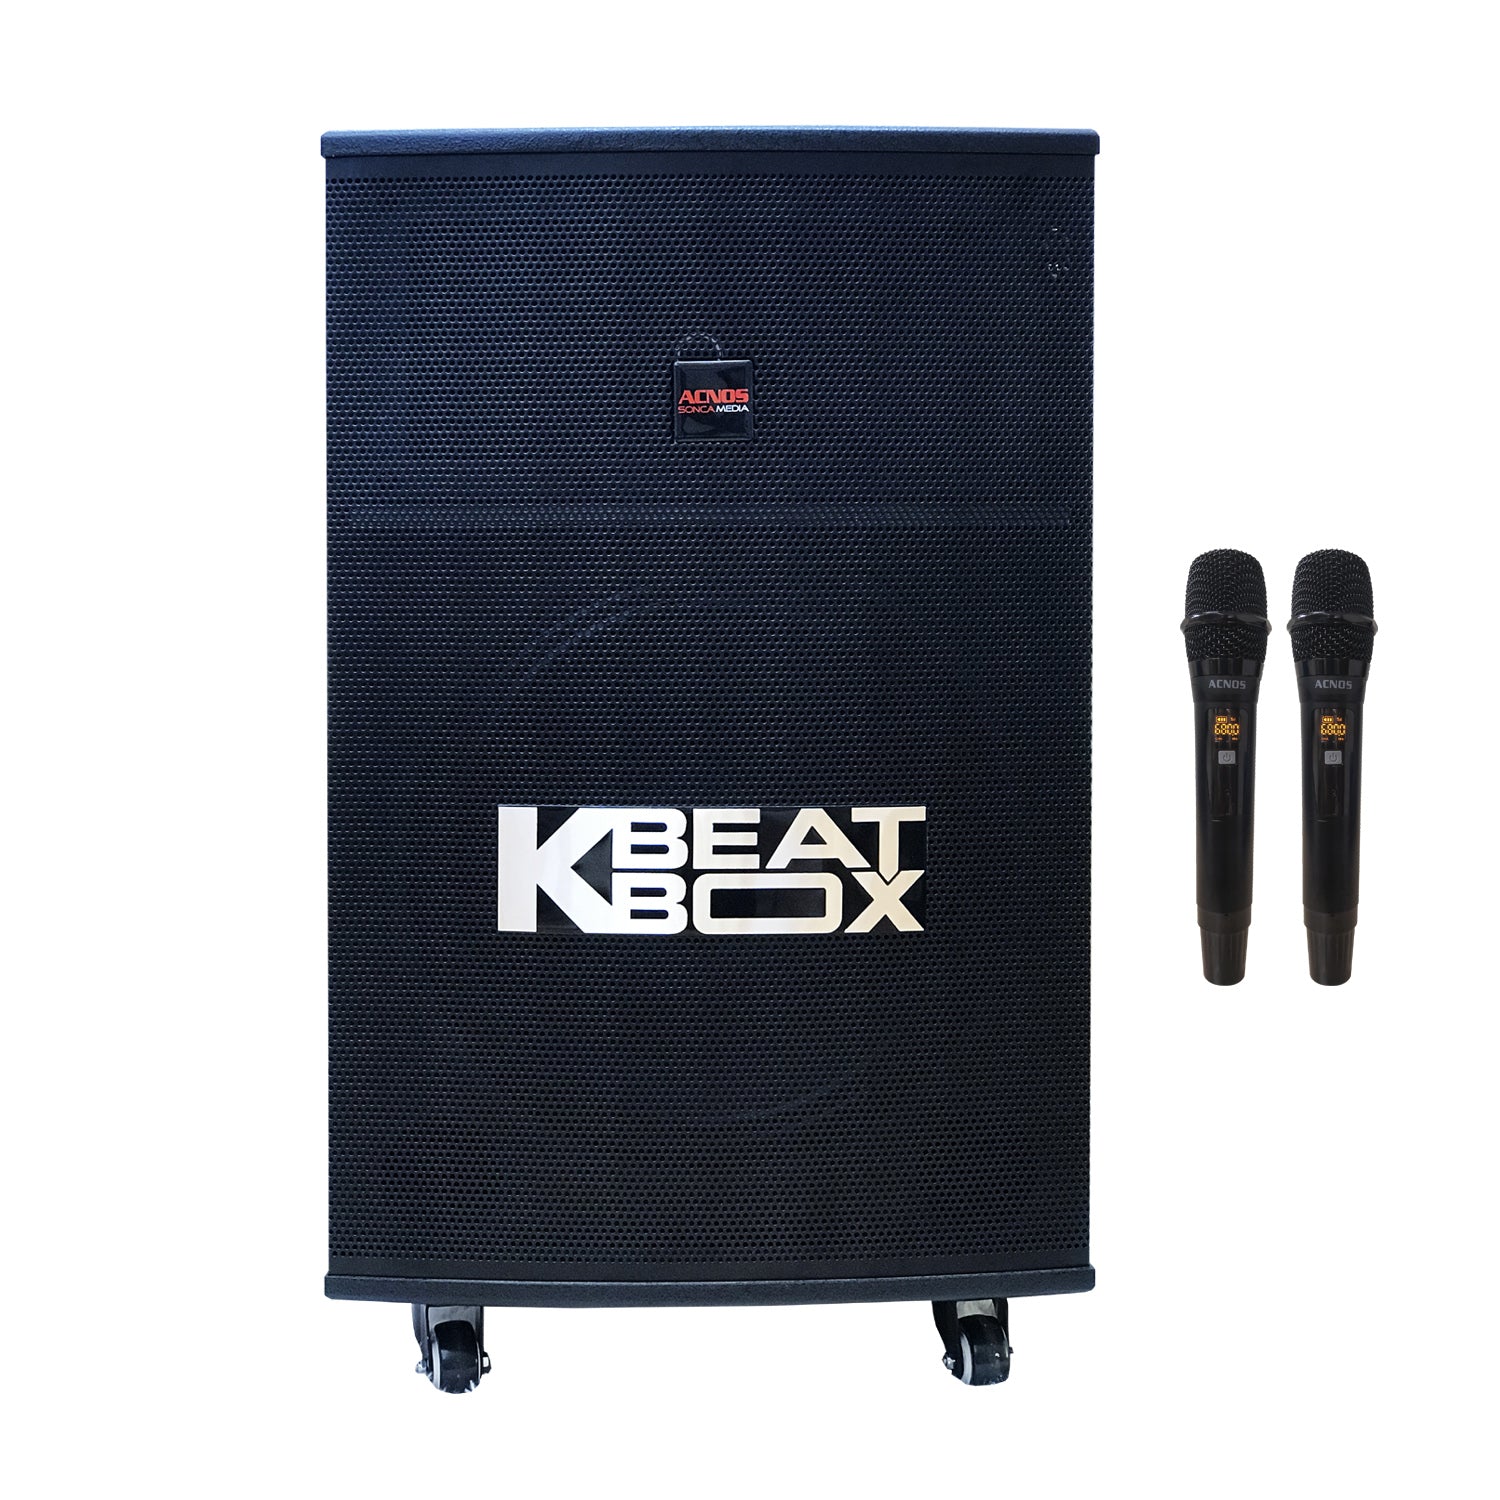 KBeatBox KB-43S [150W RMS / 600W PMPO] Karaoke Powered Speaker System + 2 Wireless Mic's + USB Karaoke & Cloud App